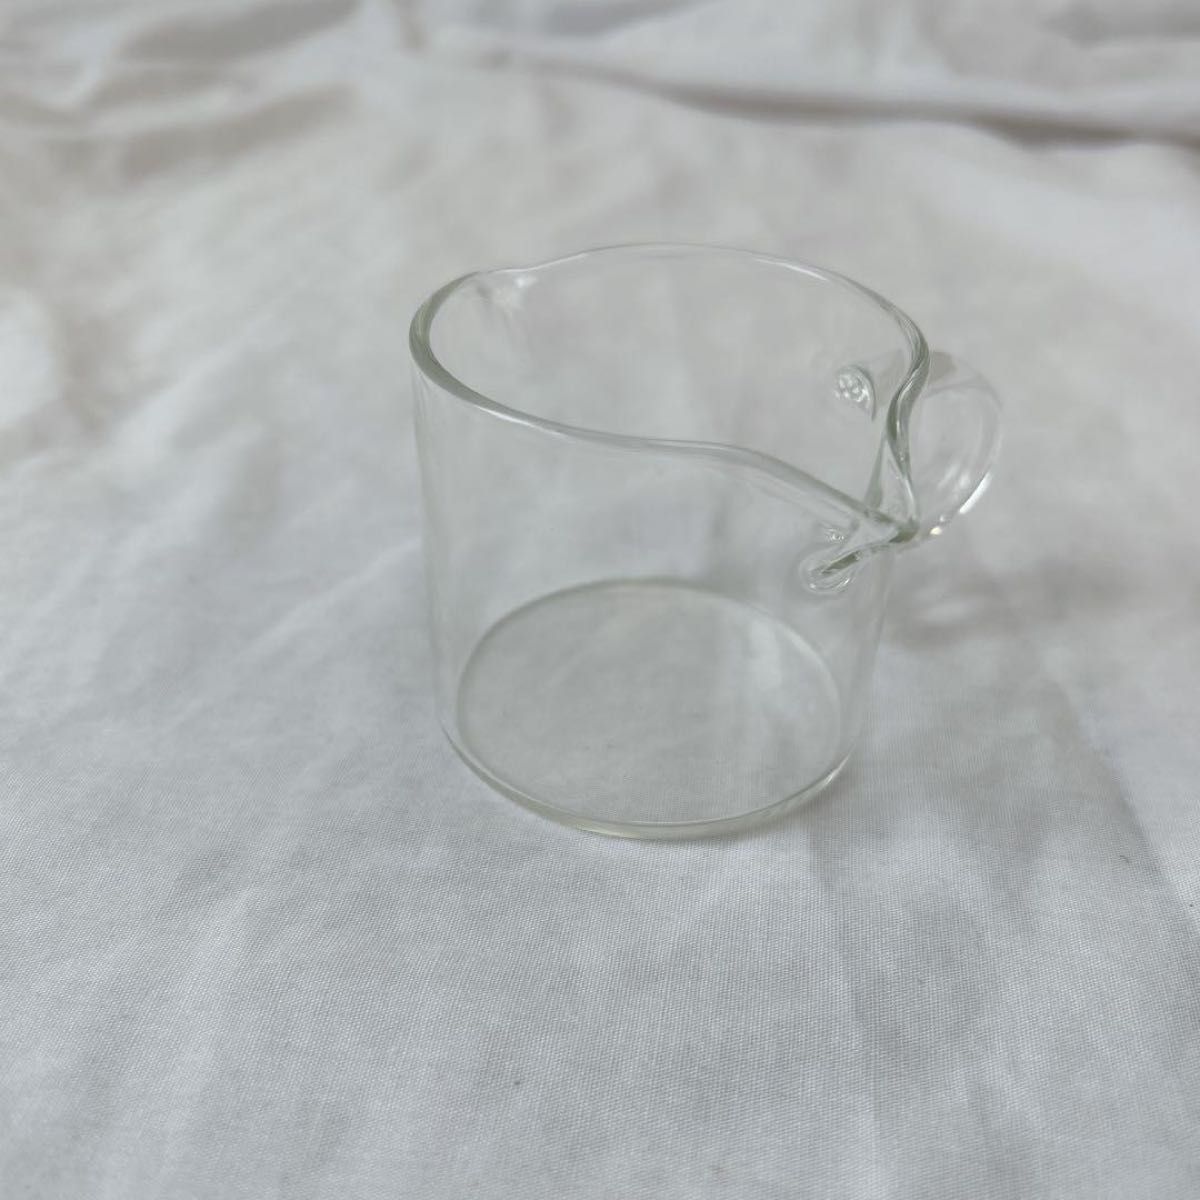 エスプレッソ ショットグラス カップ 70ml 耐熱 ガラス製 抽出量 ミルク